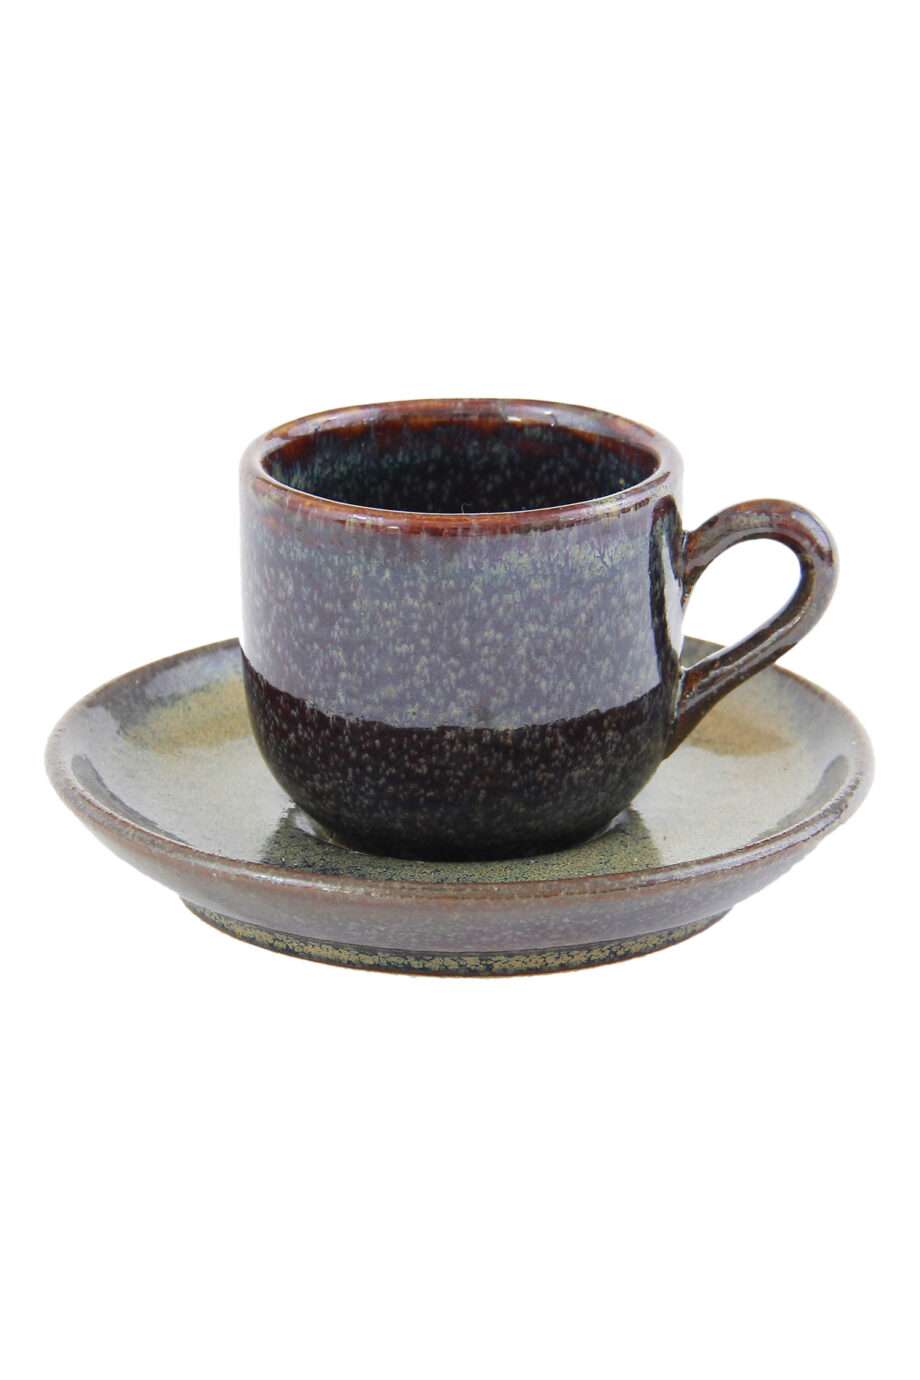 espresso cup and saucer  glaze ceramic